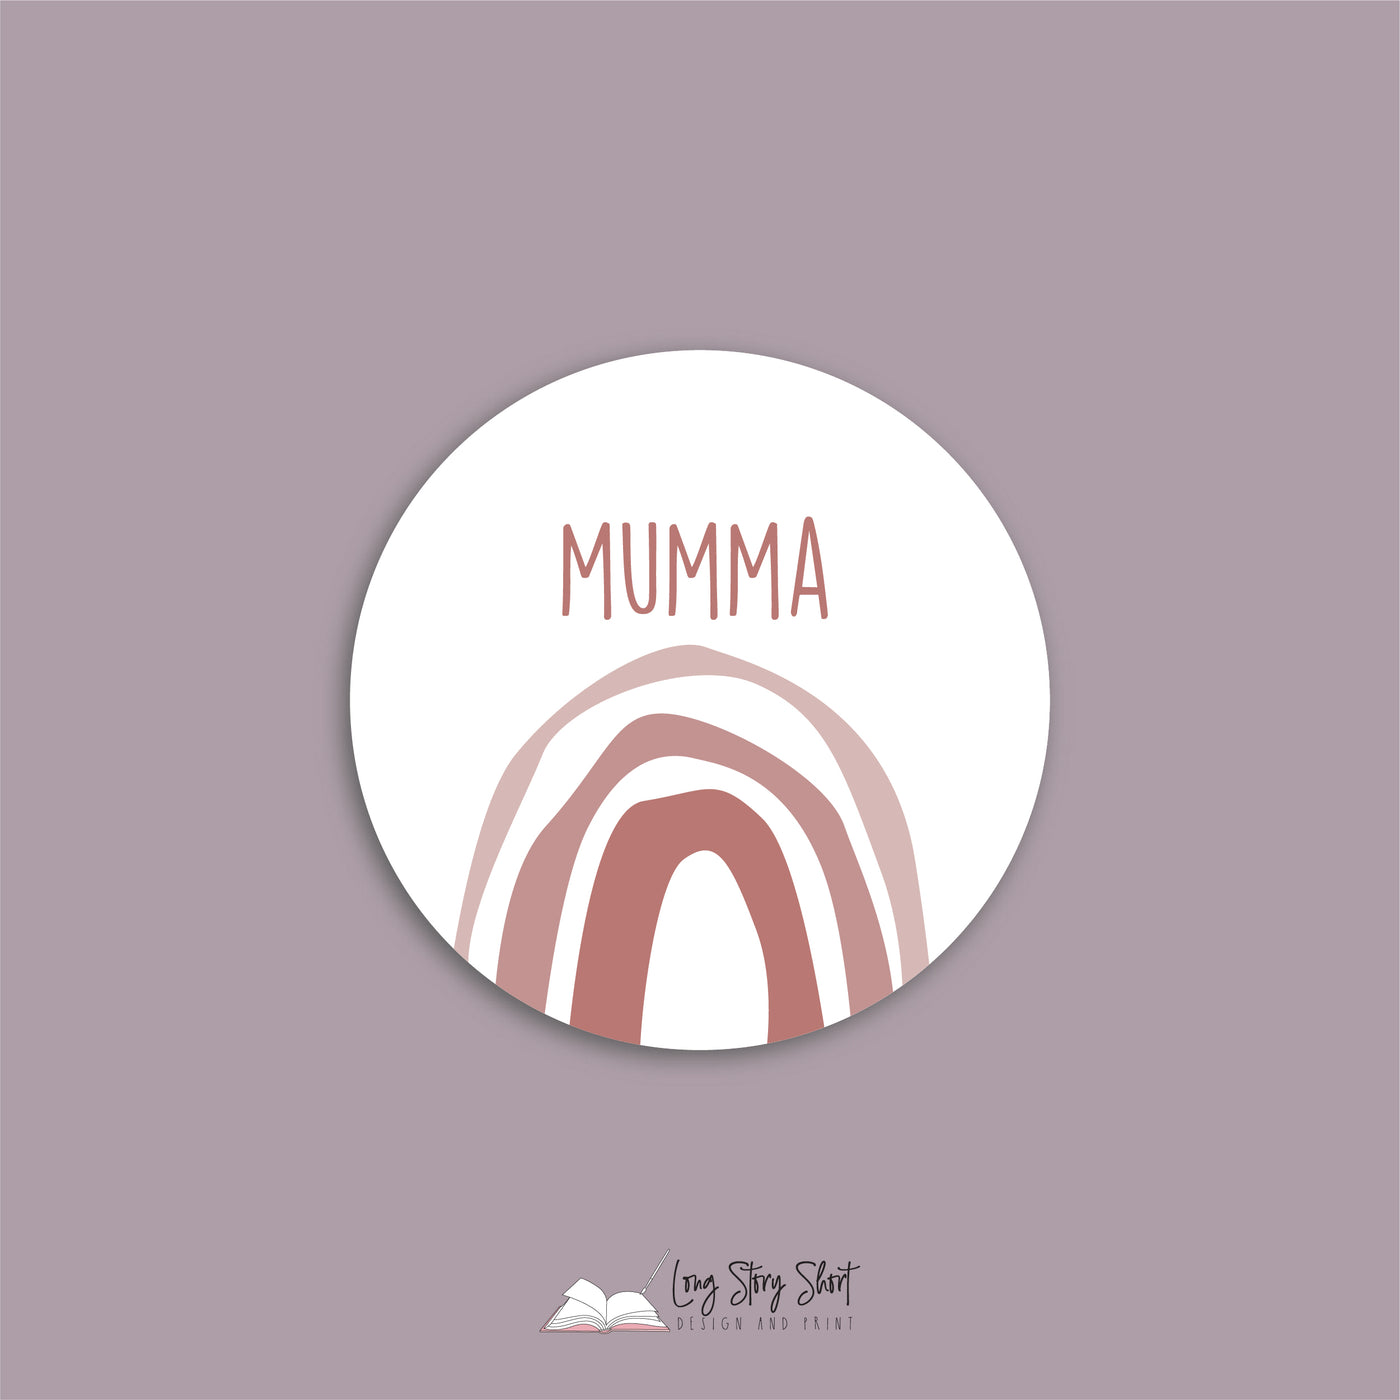 Greatest Mum Round Vinyl Label Pack